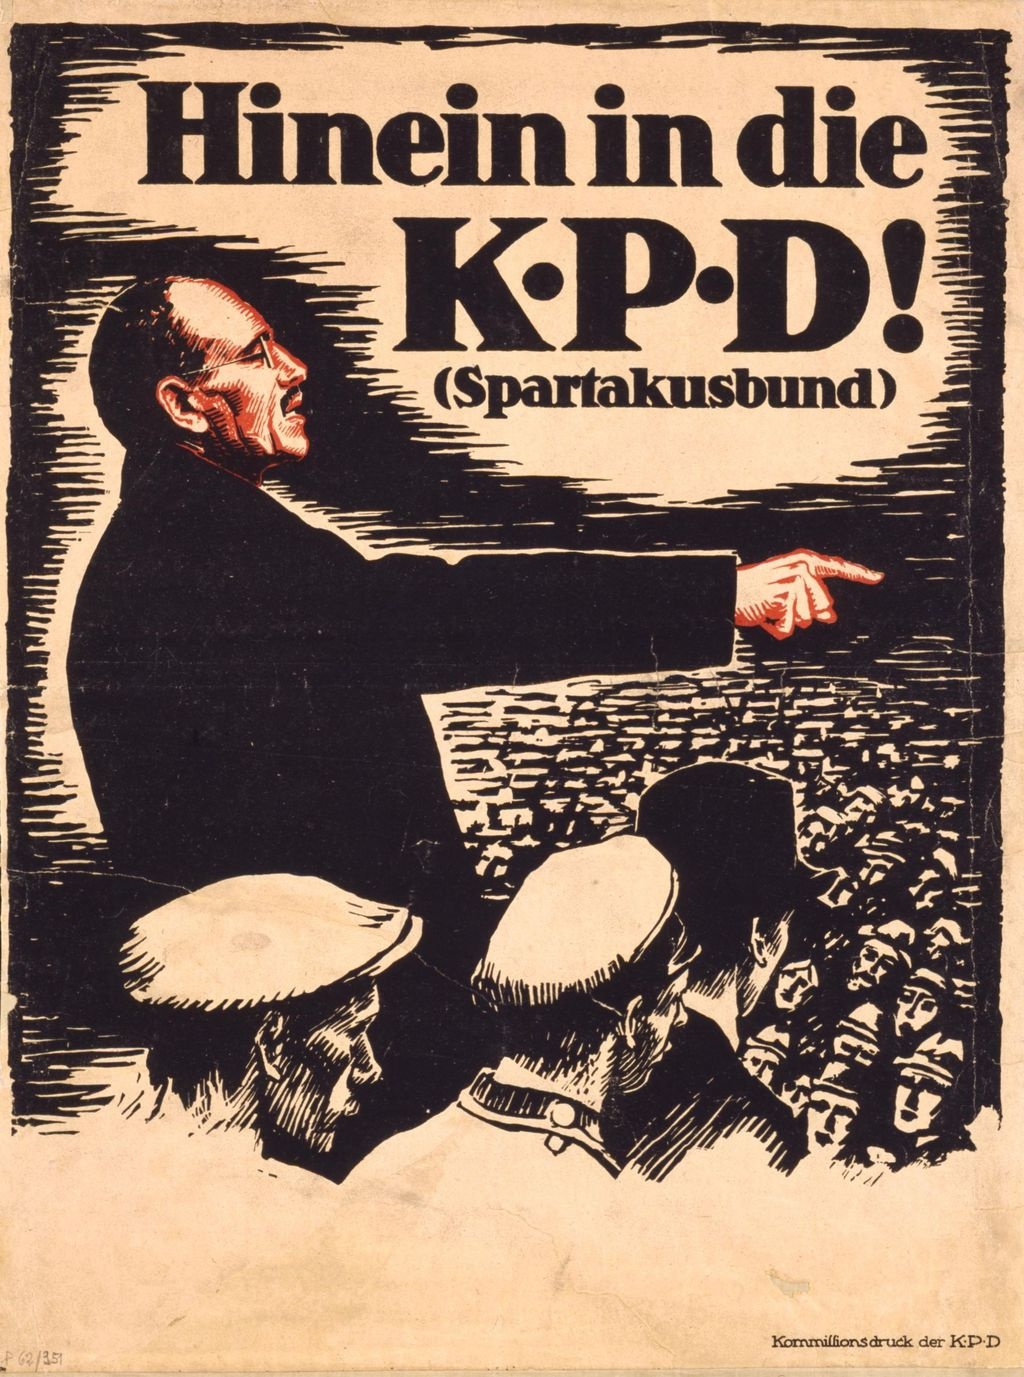 Spartakistaffisch från 1919, med Karl Liebknecht som talar för folkmassorna.